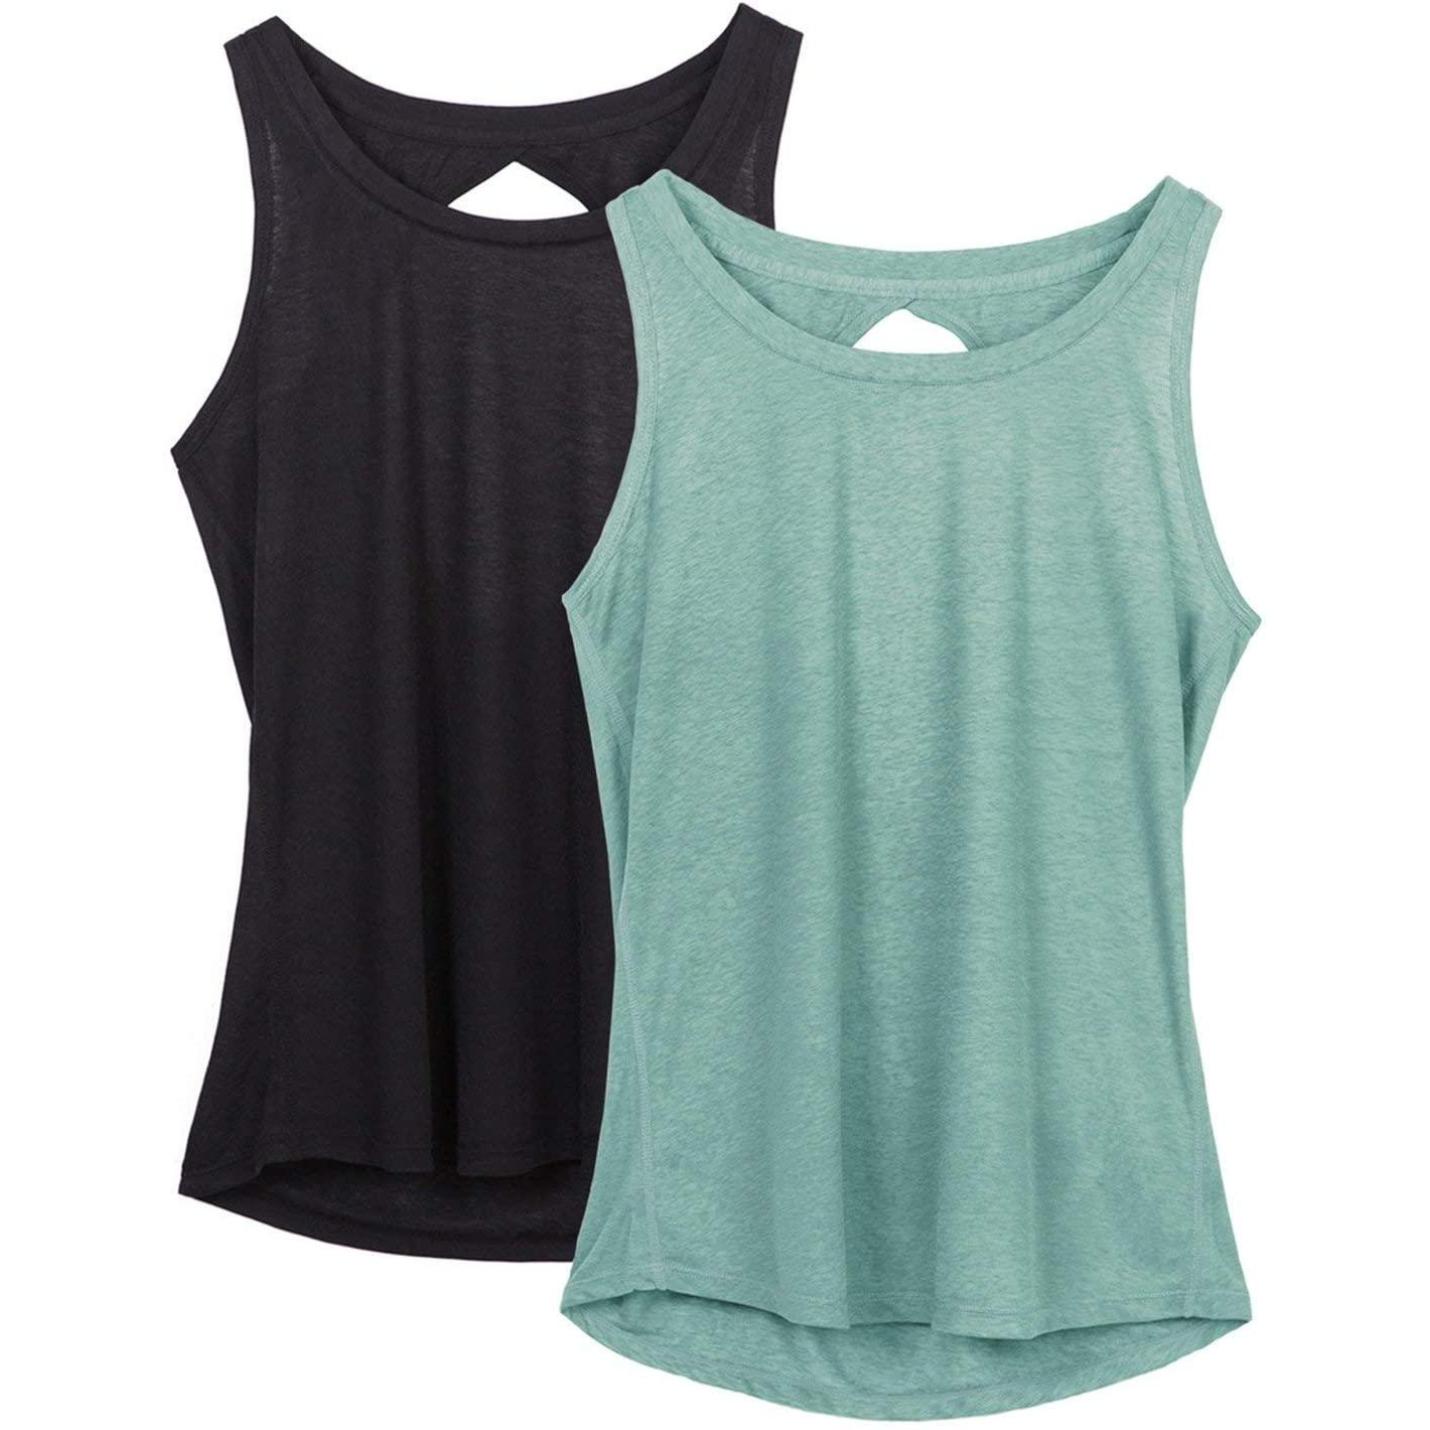 Dames Yoga Sport Tank Top Rugvrij Fitness Top Mouwloos Shirts 2 Pack M  zwartlichtgroen.